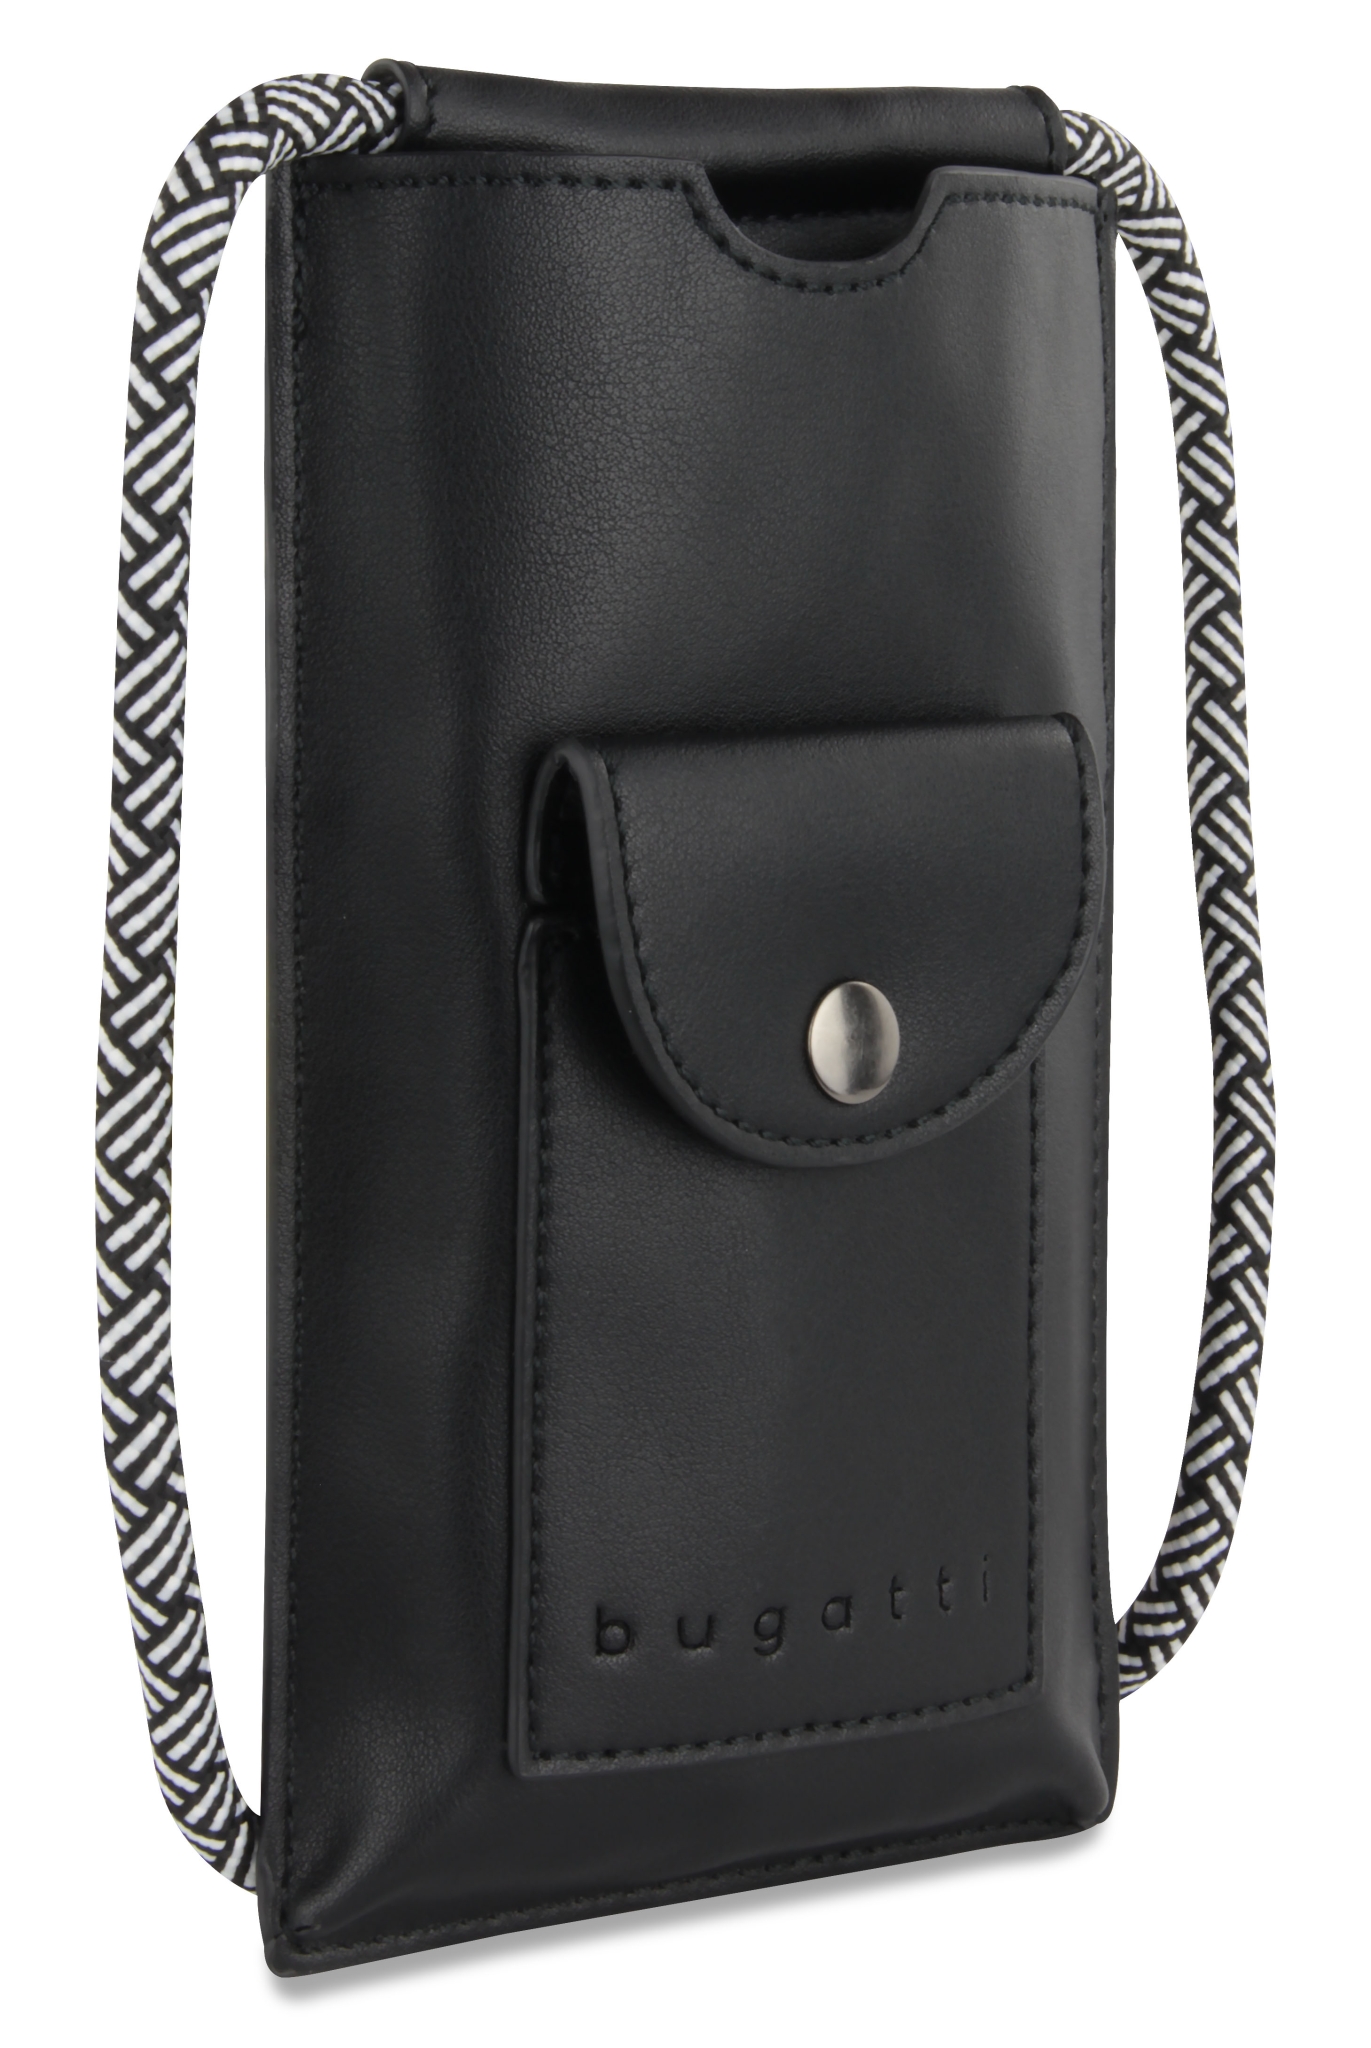 Сумка-чехол для мобильного телефона BUGATTI Almata, чёрная, полиуретан, 11x2x18 см, черный